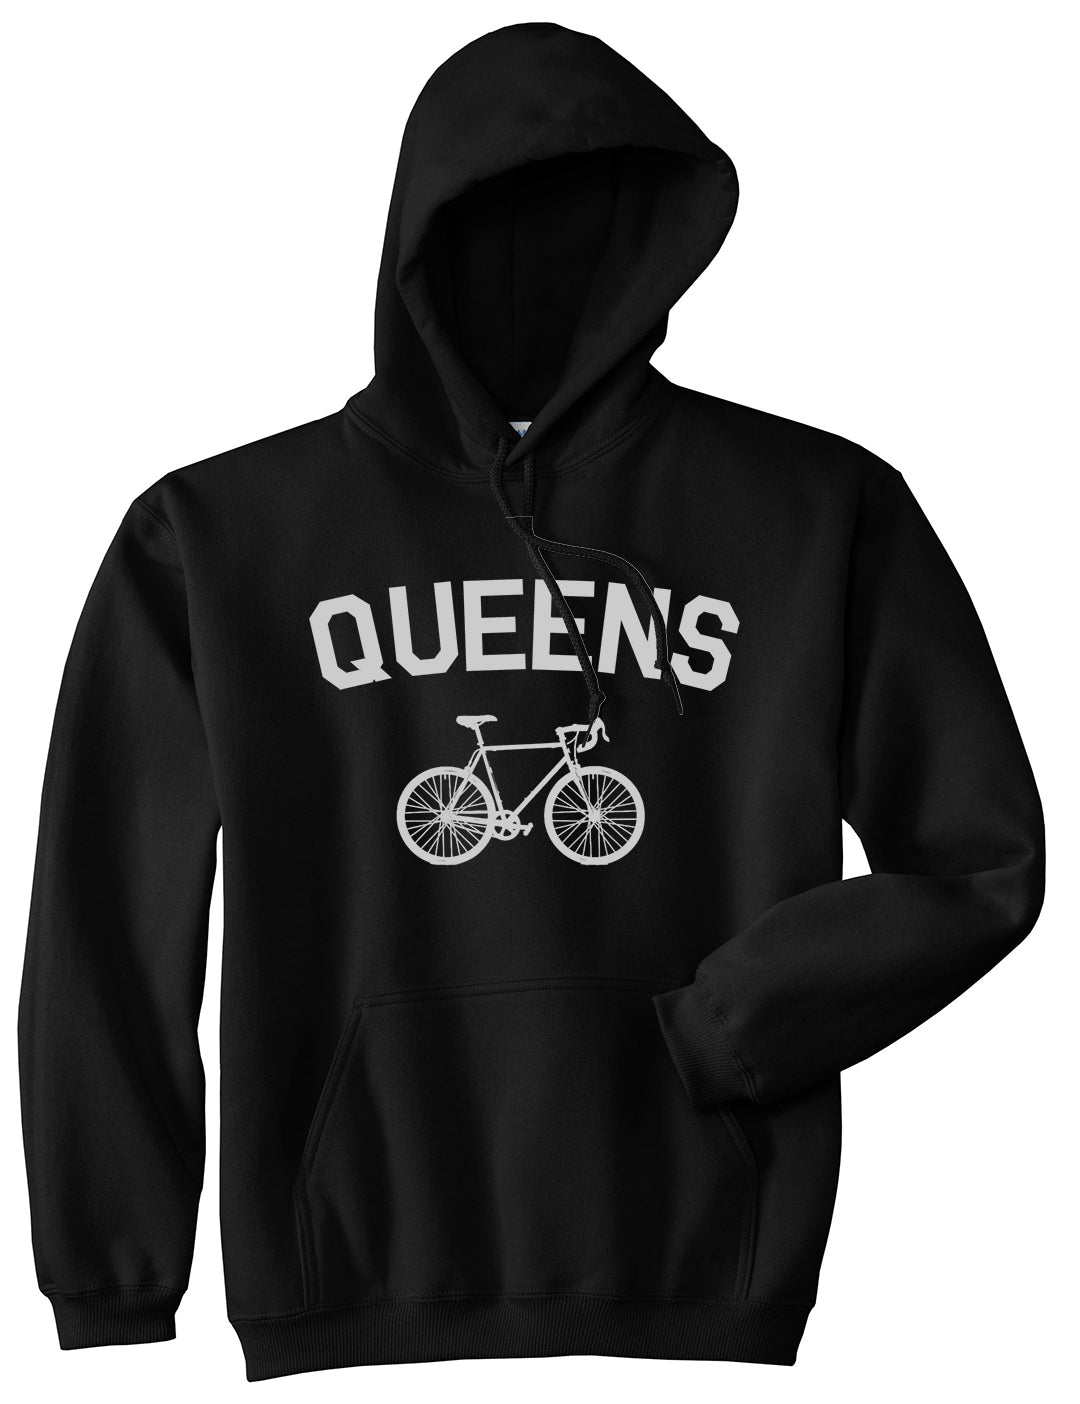 Queens New York Vintage Bike Cycling Mens Pullover Hoodie Black